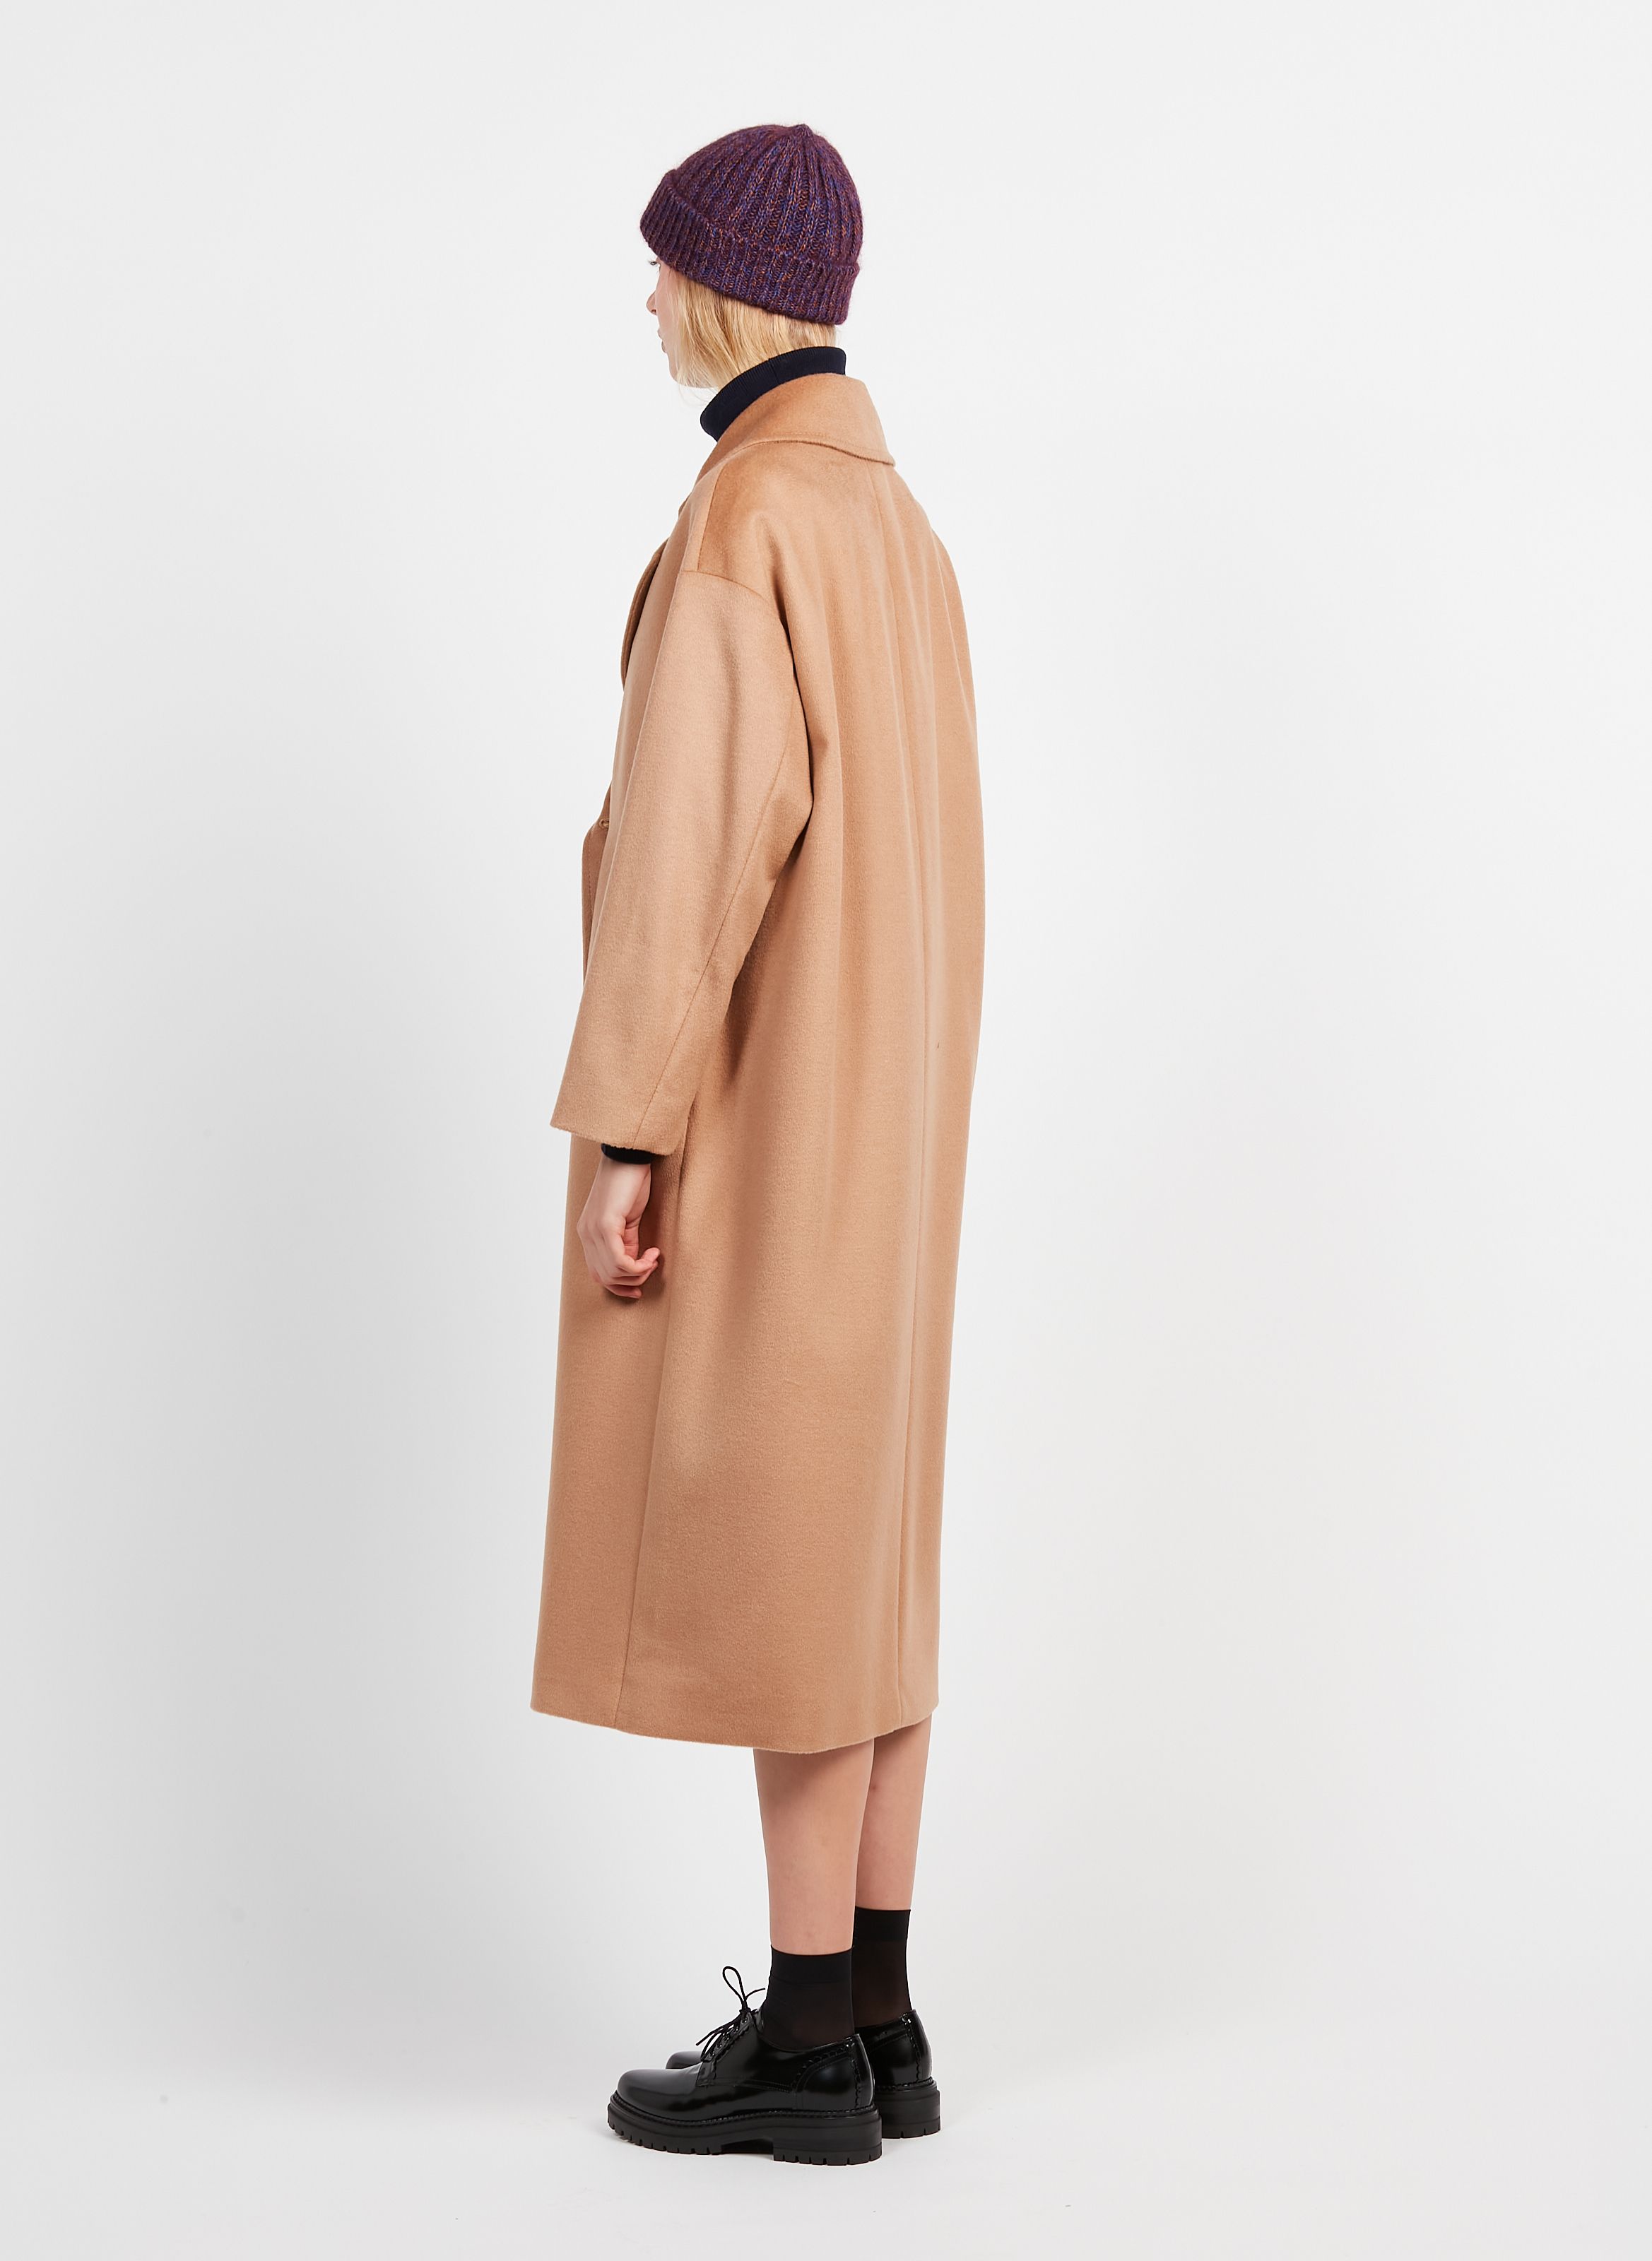 Single-breasted coats de Pennyblack de color Marrón Mujer Ropa de Abrigos de 